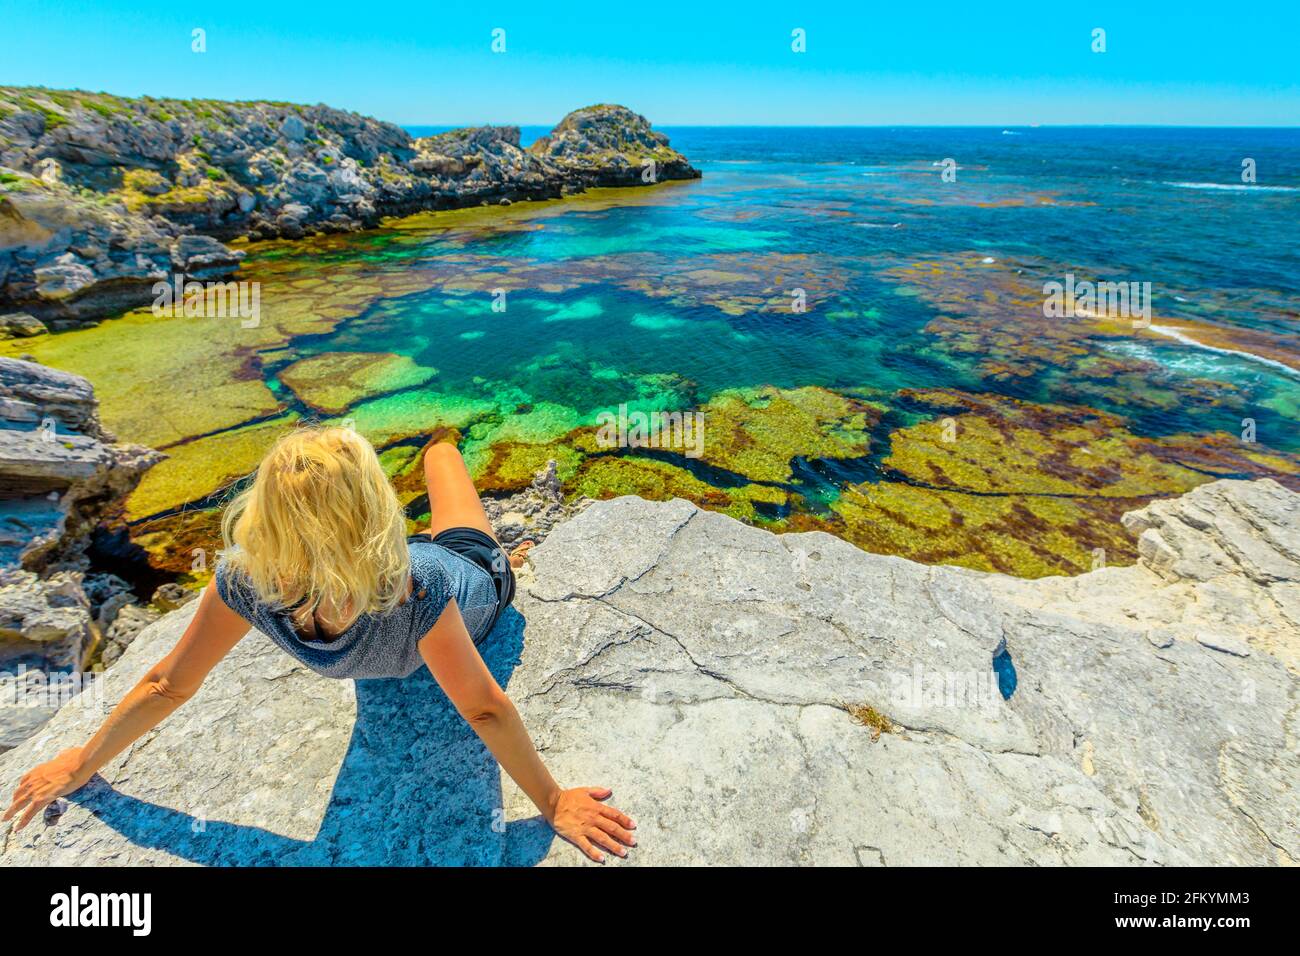 Une jeune fille touristique caucasienne fait du soleil sur des rochers qui regardent les eaux turquoise de Jeannies Lookout à Rottnest Island, Perth, Australie occidentale. Vue panoramique Banque D'Images